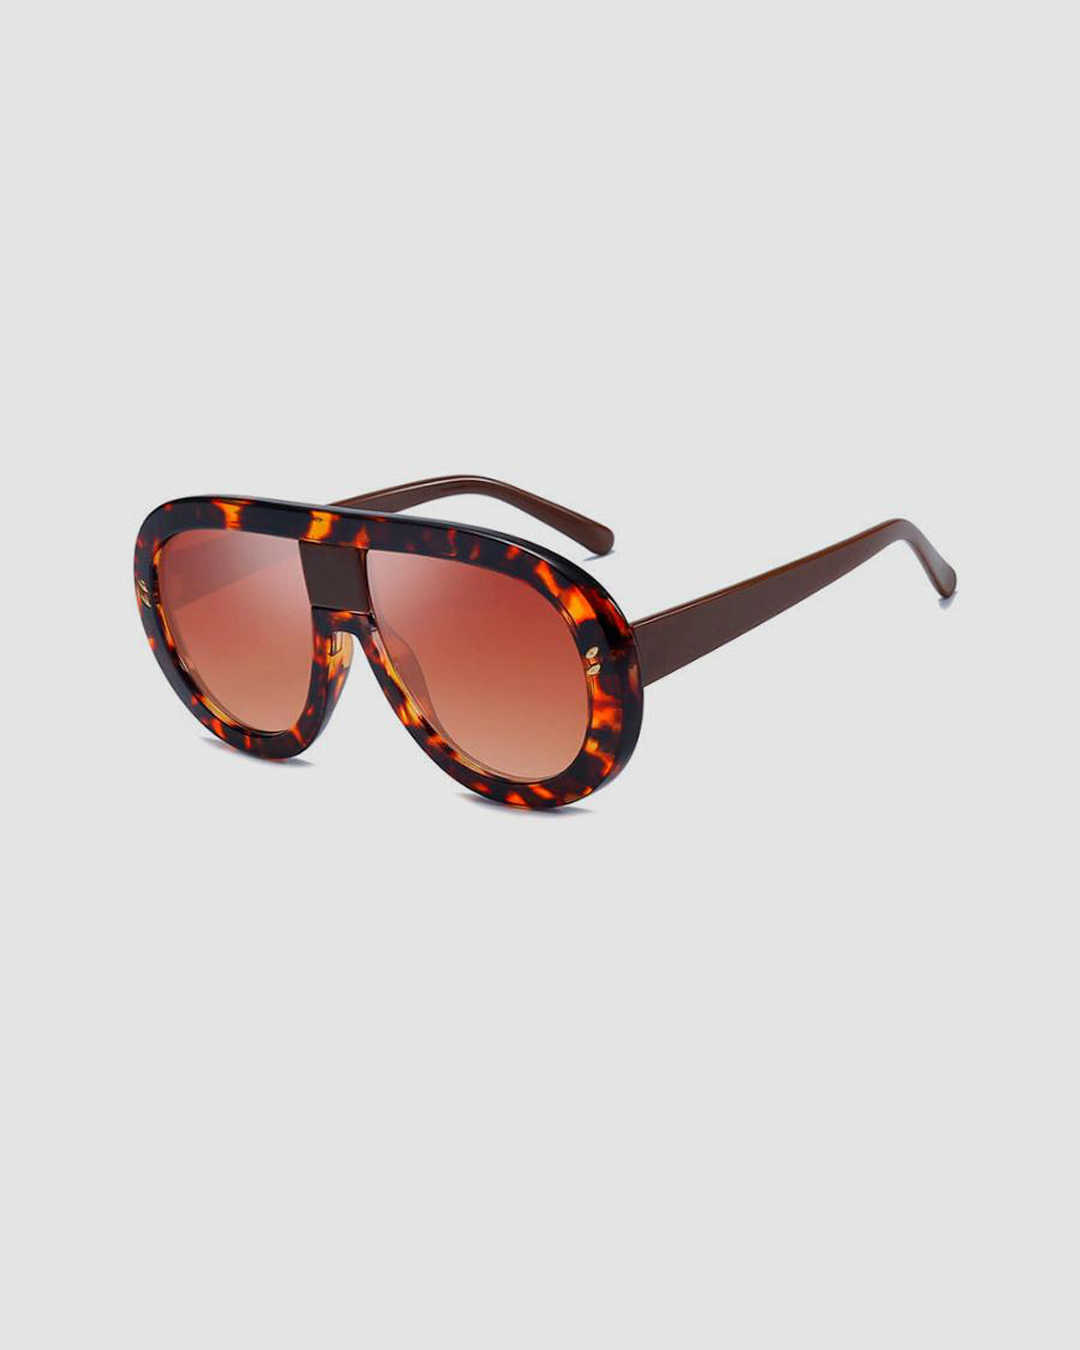 Mimic Sunglasses